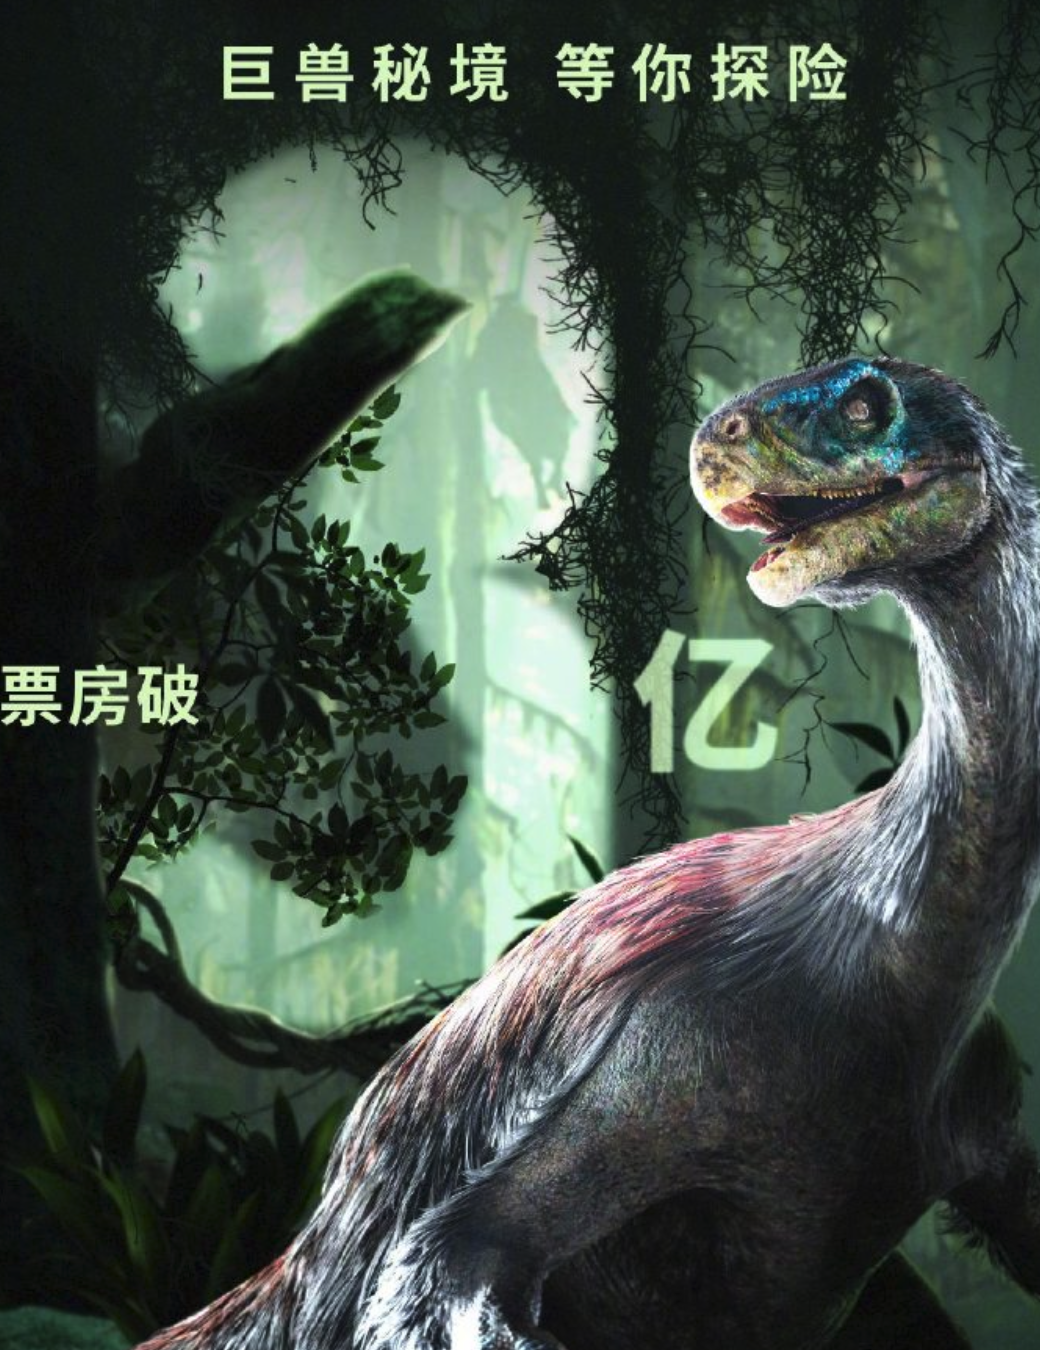 《侏罗纪世界 3》中国内地上映三天票房破 3 亿元，今年以来票房最高外语片